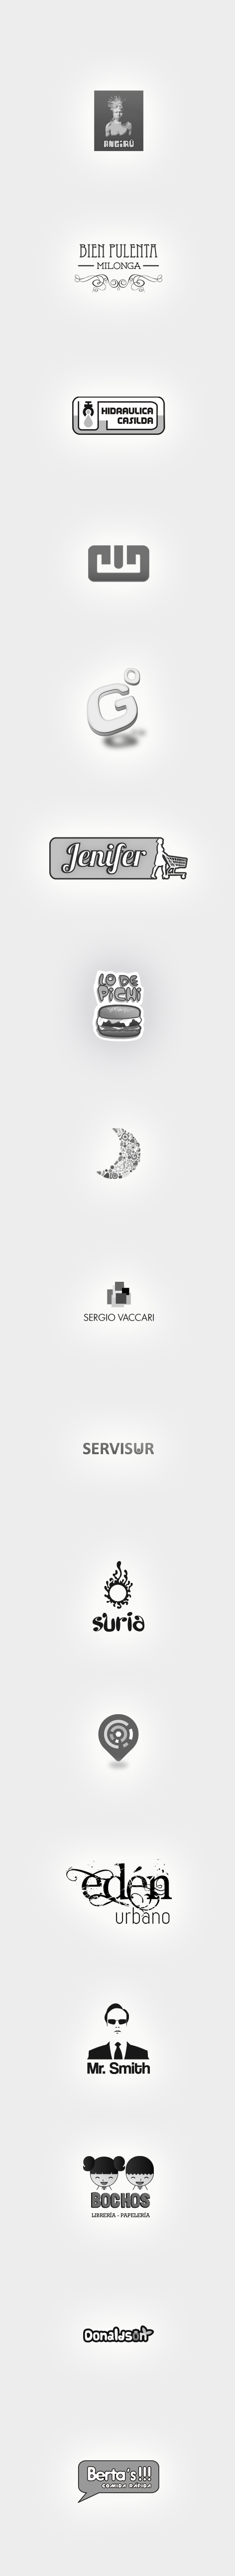 logos 2011/2012 alejandro mariani